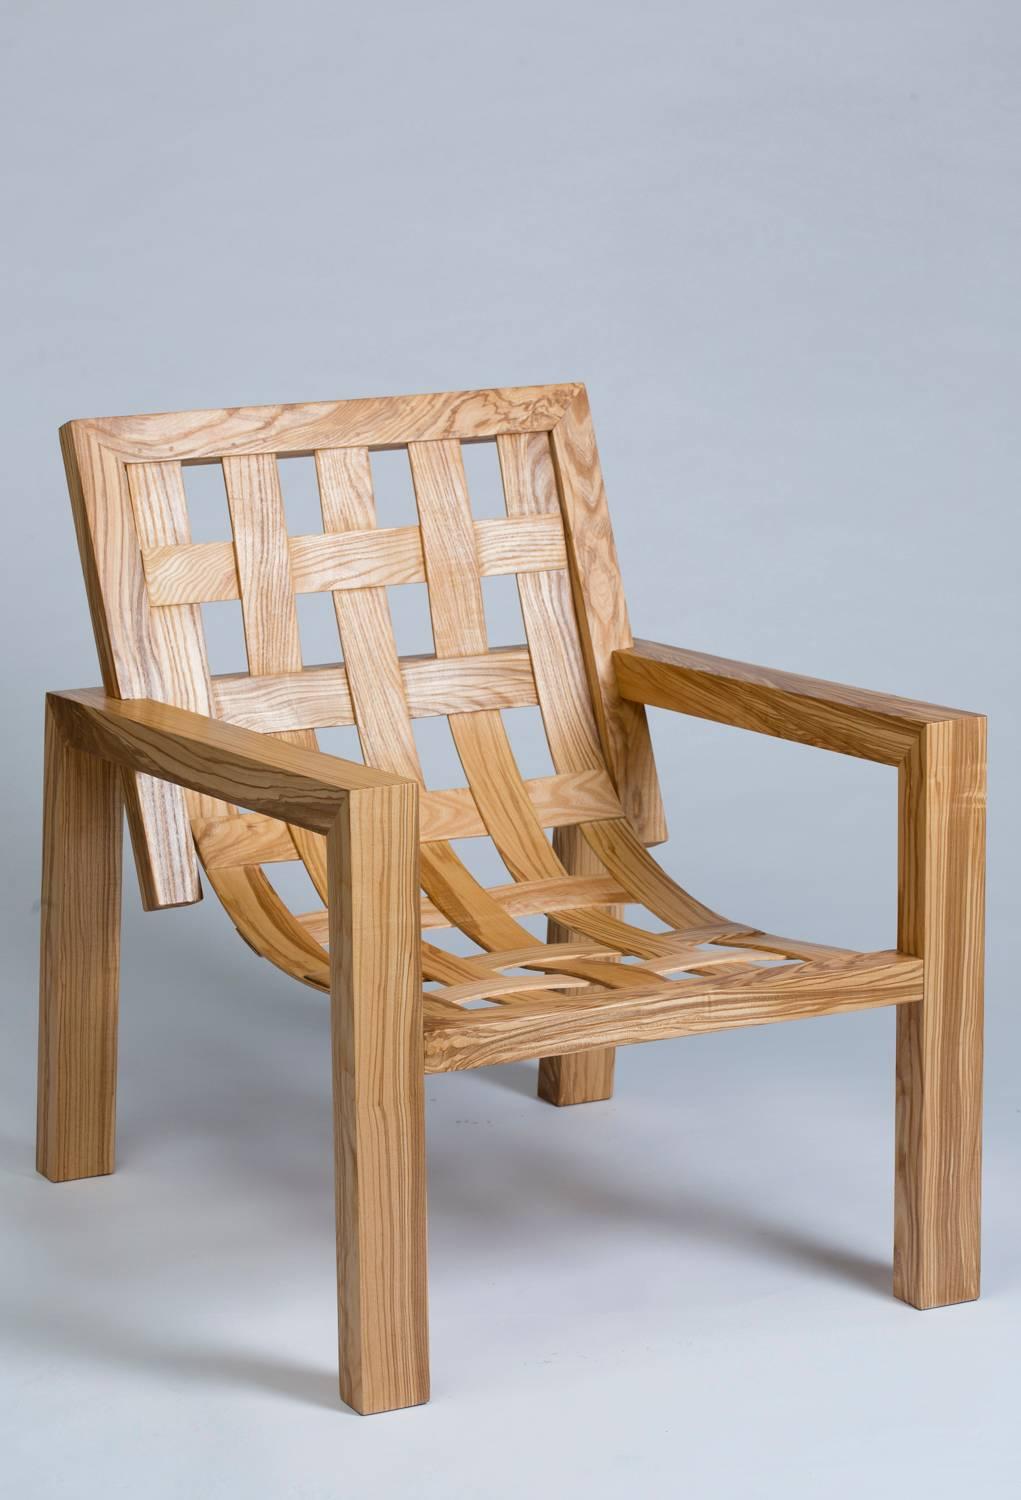 Zwei Sessel aus massiver Esche-Olive, Sitz und Rückenlehne aus verleimtem Holz.

Technisches Geschick und sehr saubere Verarbeitung.
Vollständig von Hand gefertigt.